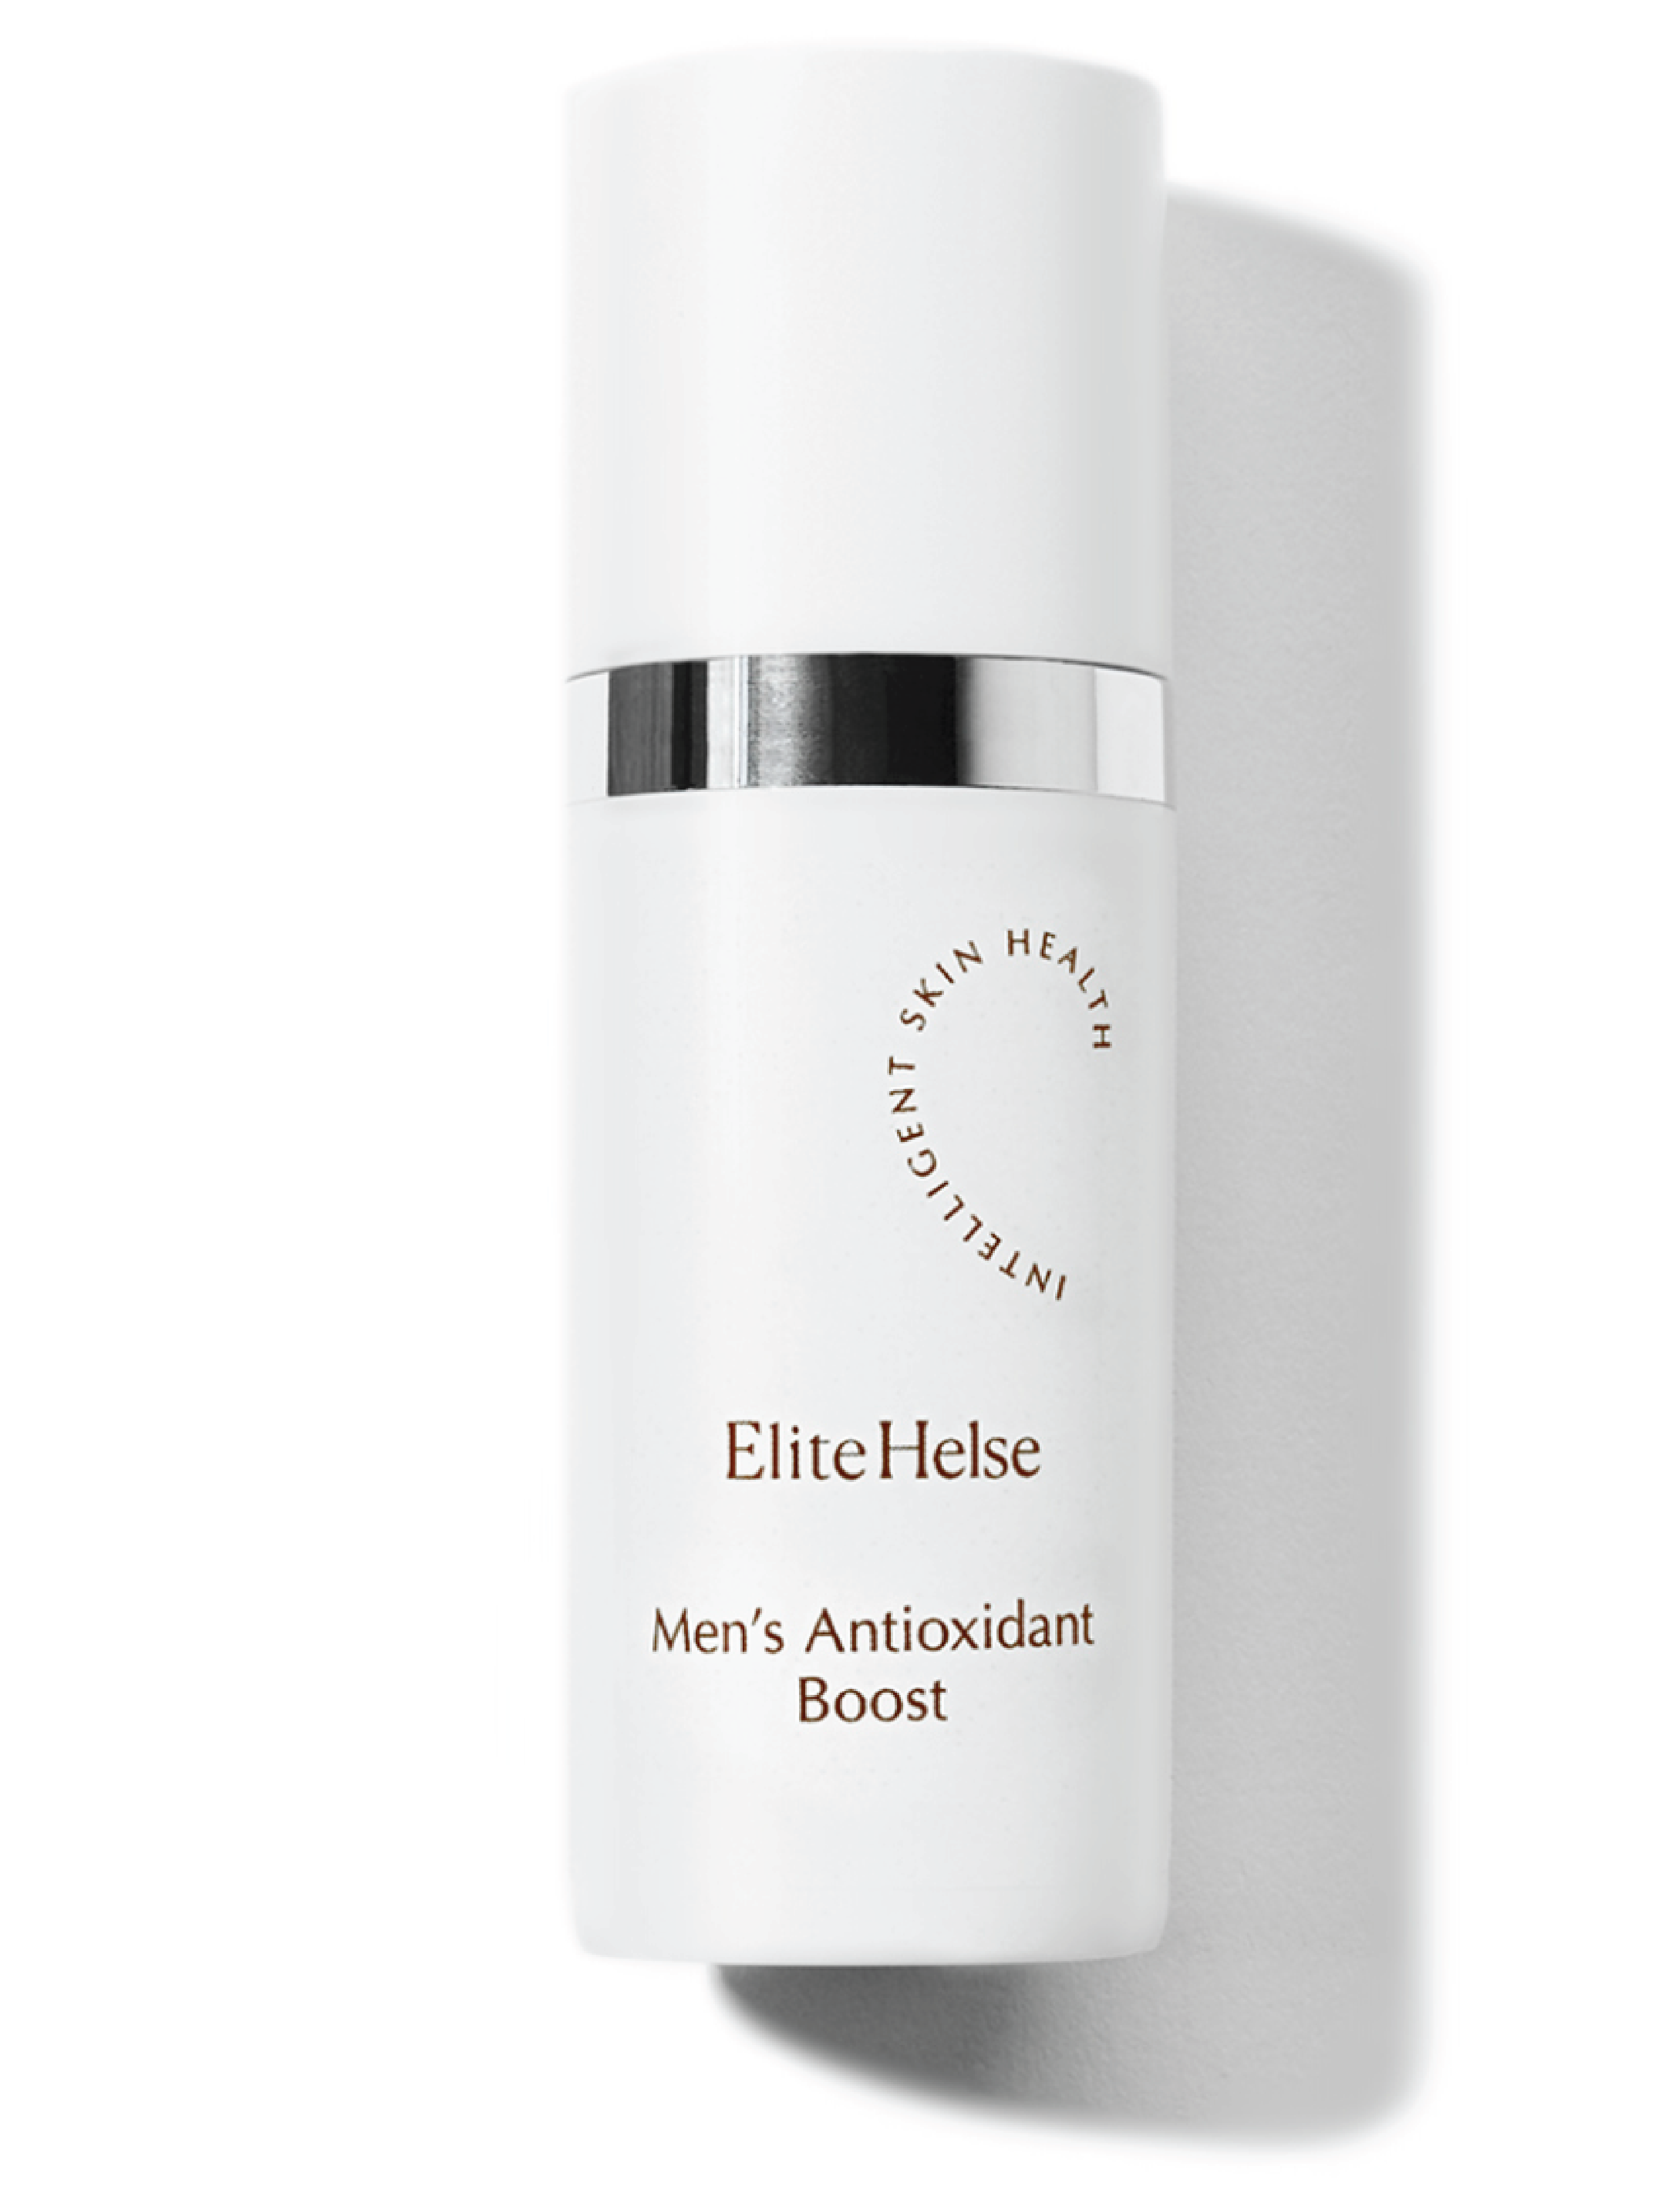 Elite Helse Intelligent Skin Health Men's Antioxidant Boost, 30 ml